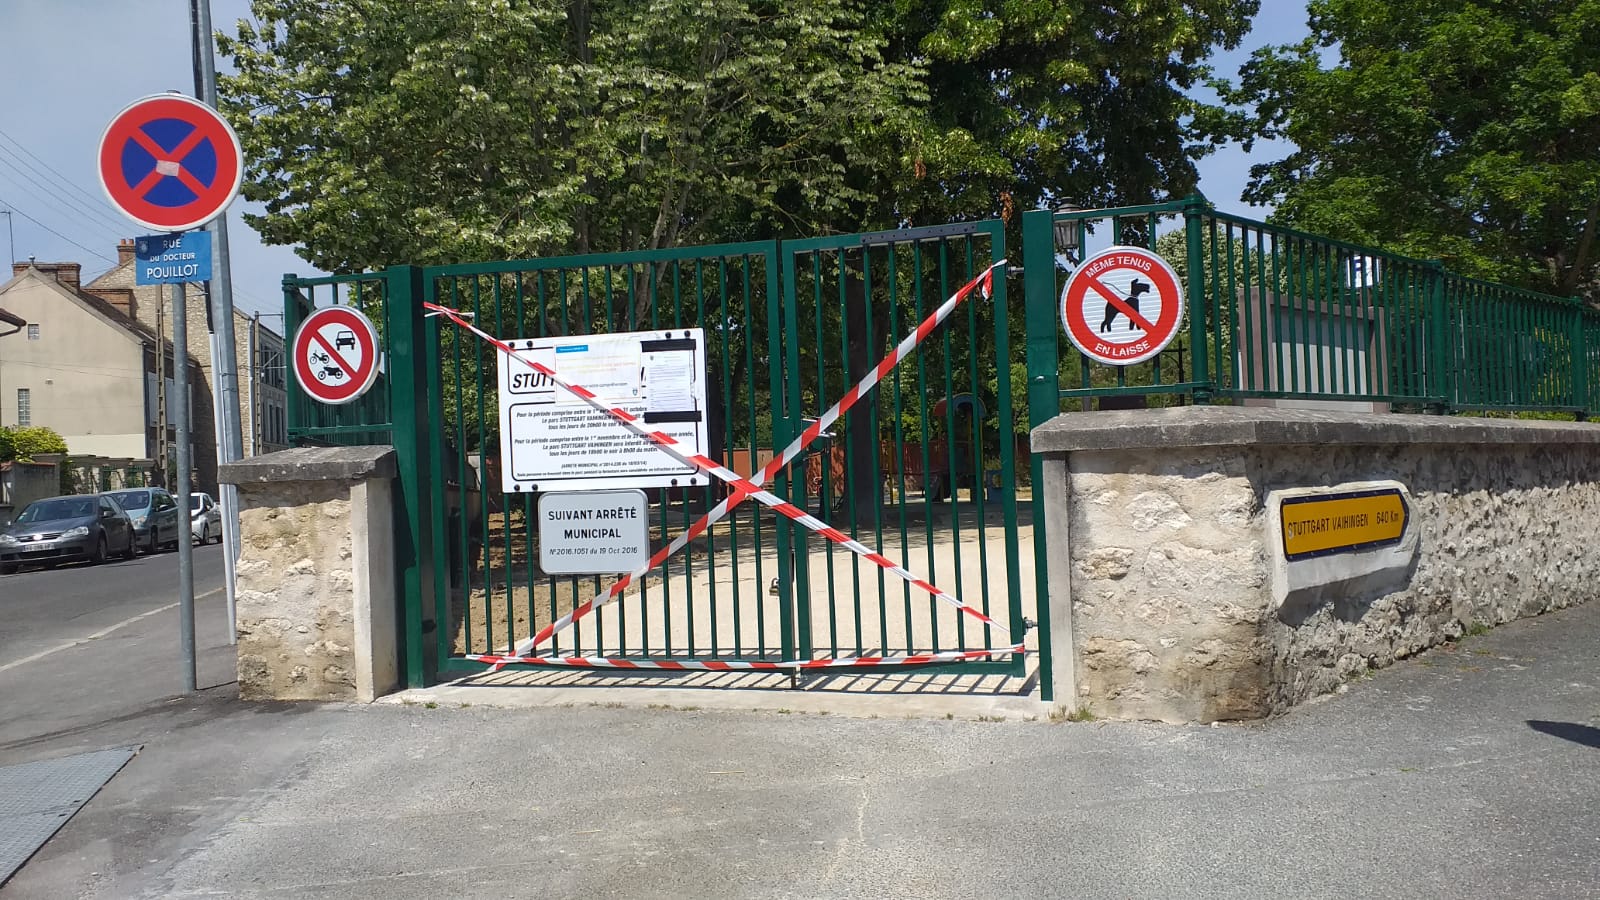 parc stuttgart vahingen fermé le 2 juin 2020